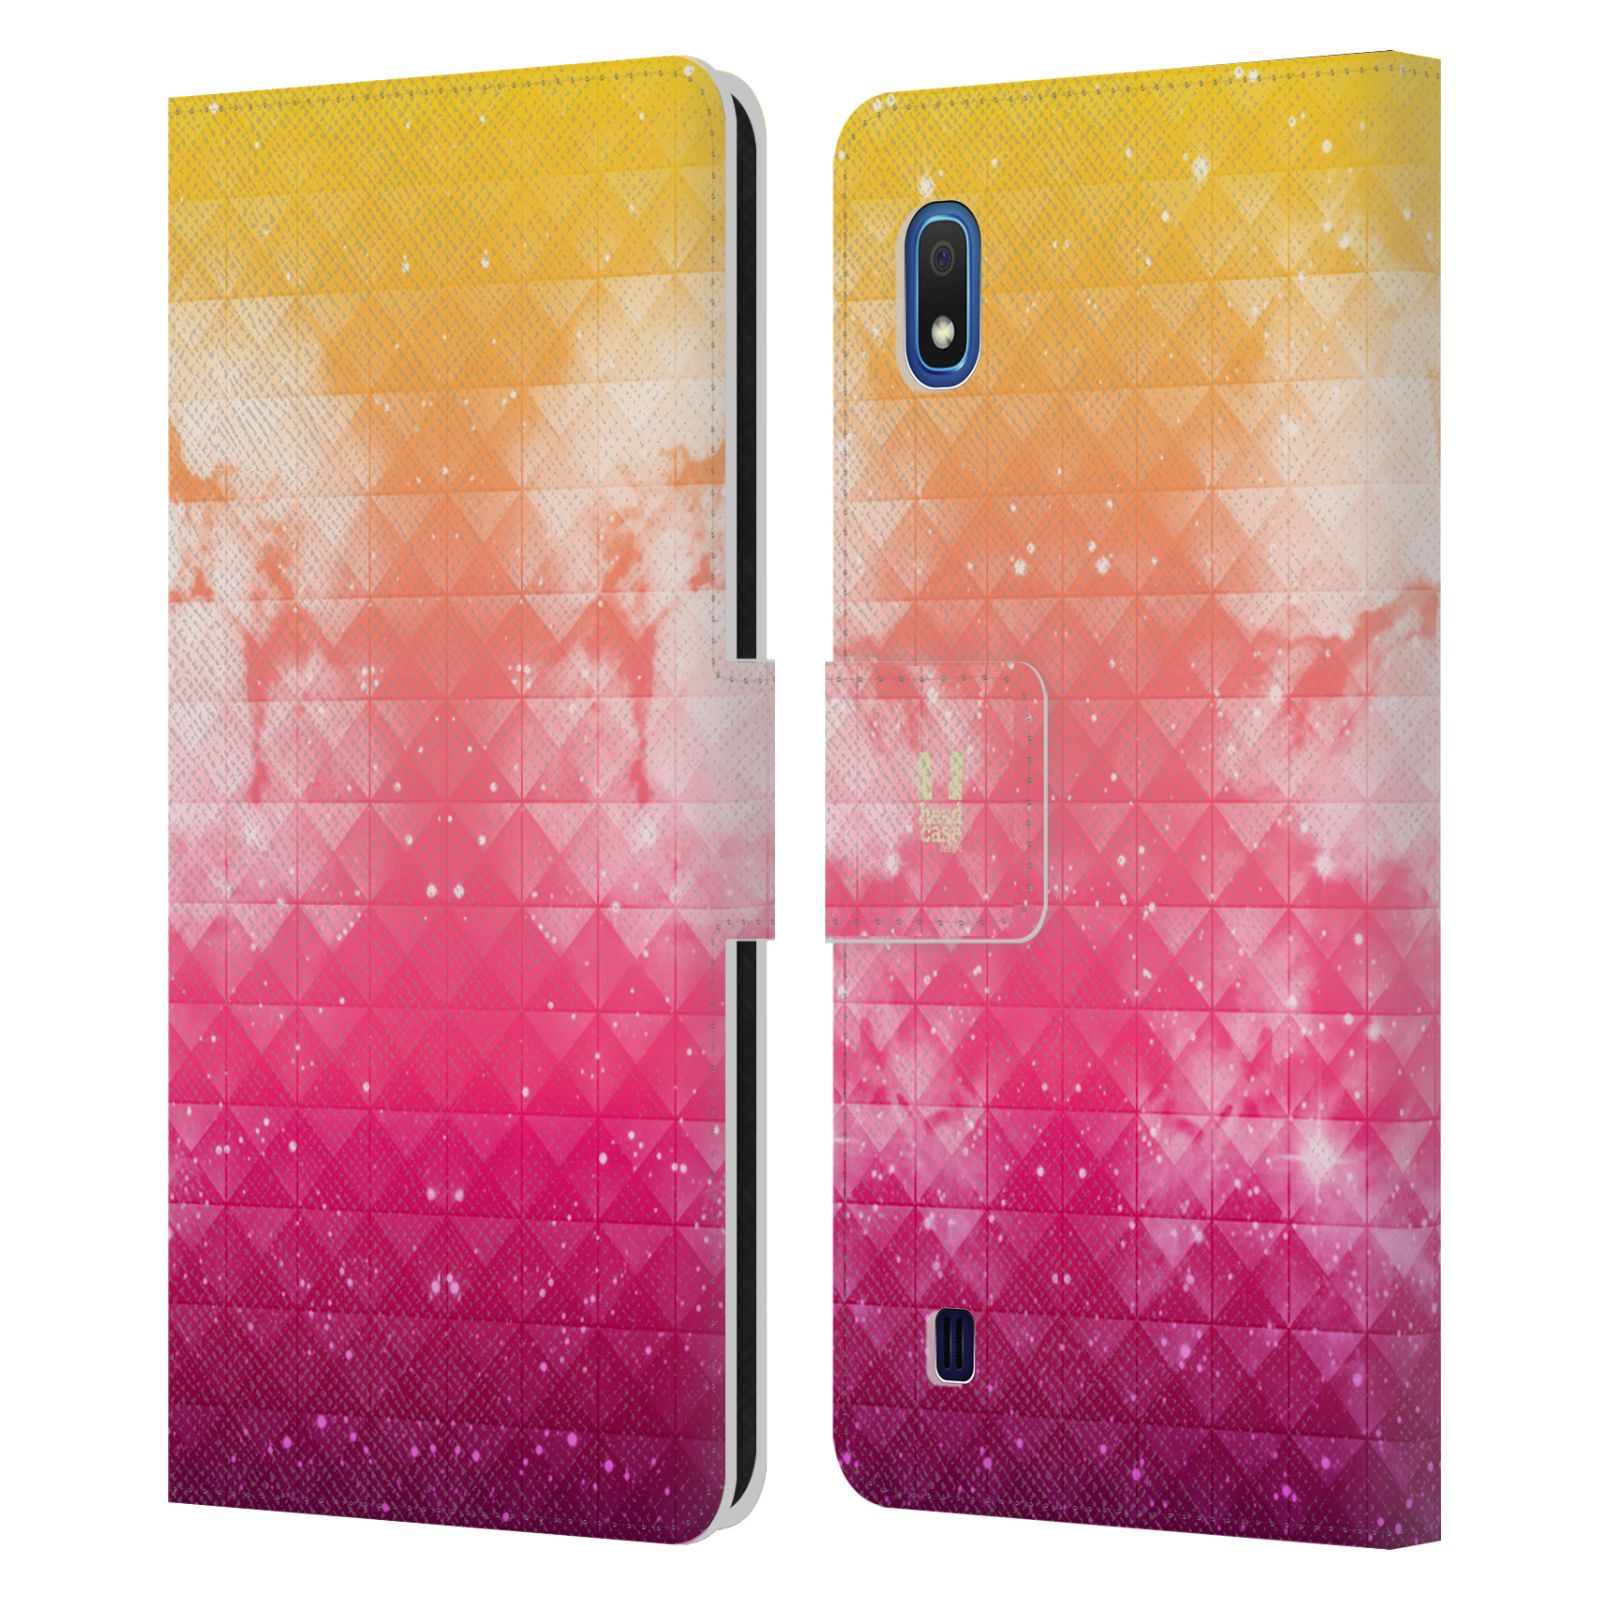 Pouzdro na mobil Samsung Galaxy A10 barevná vesmírná mlhovina oranžová a růžová